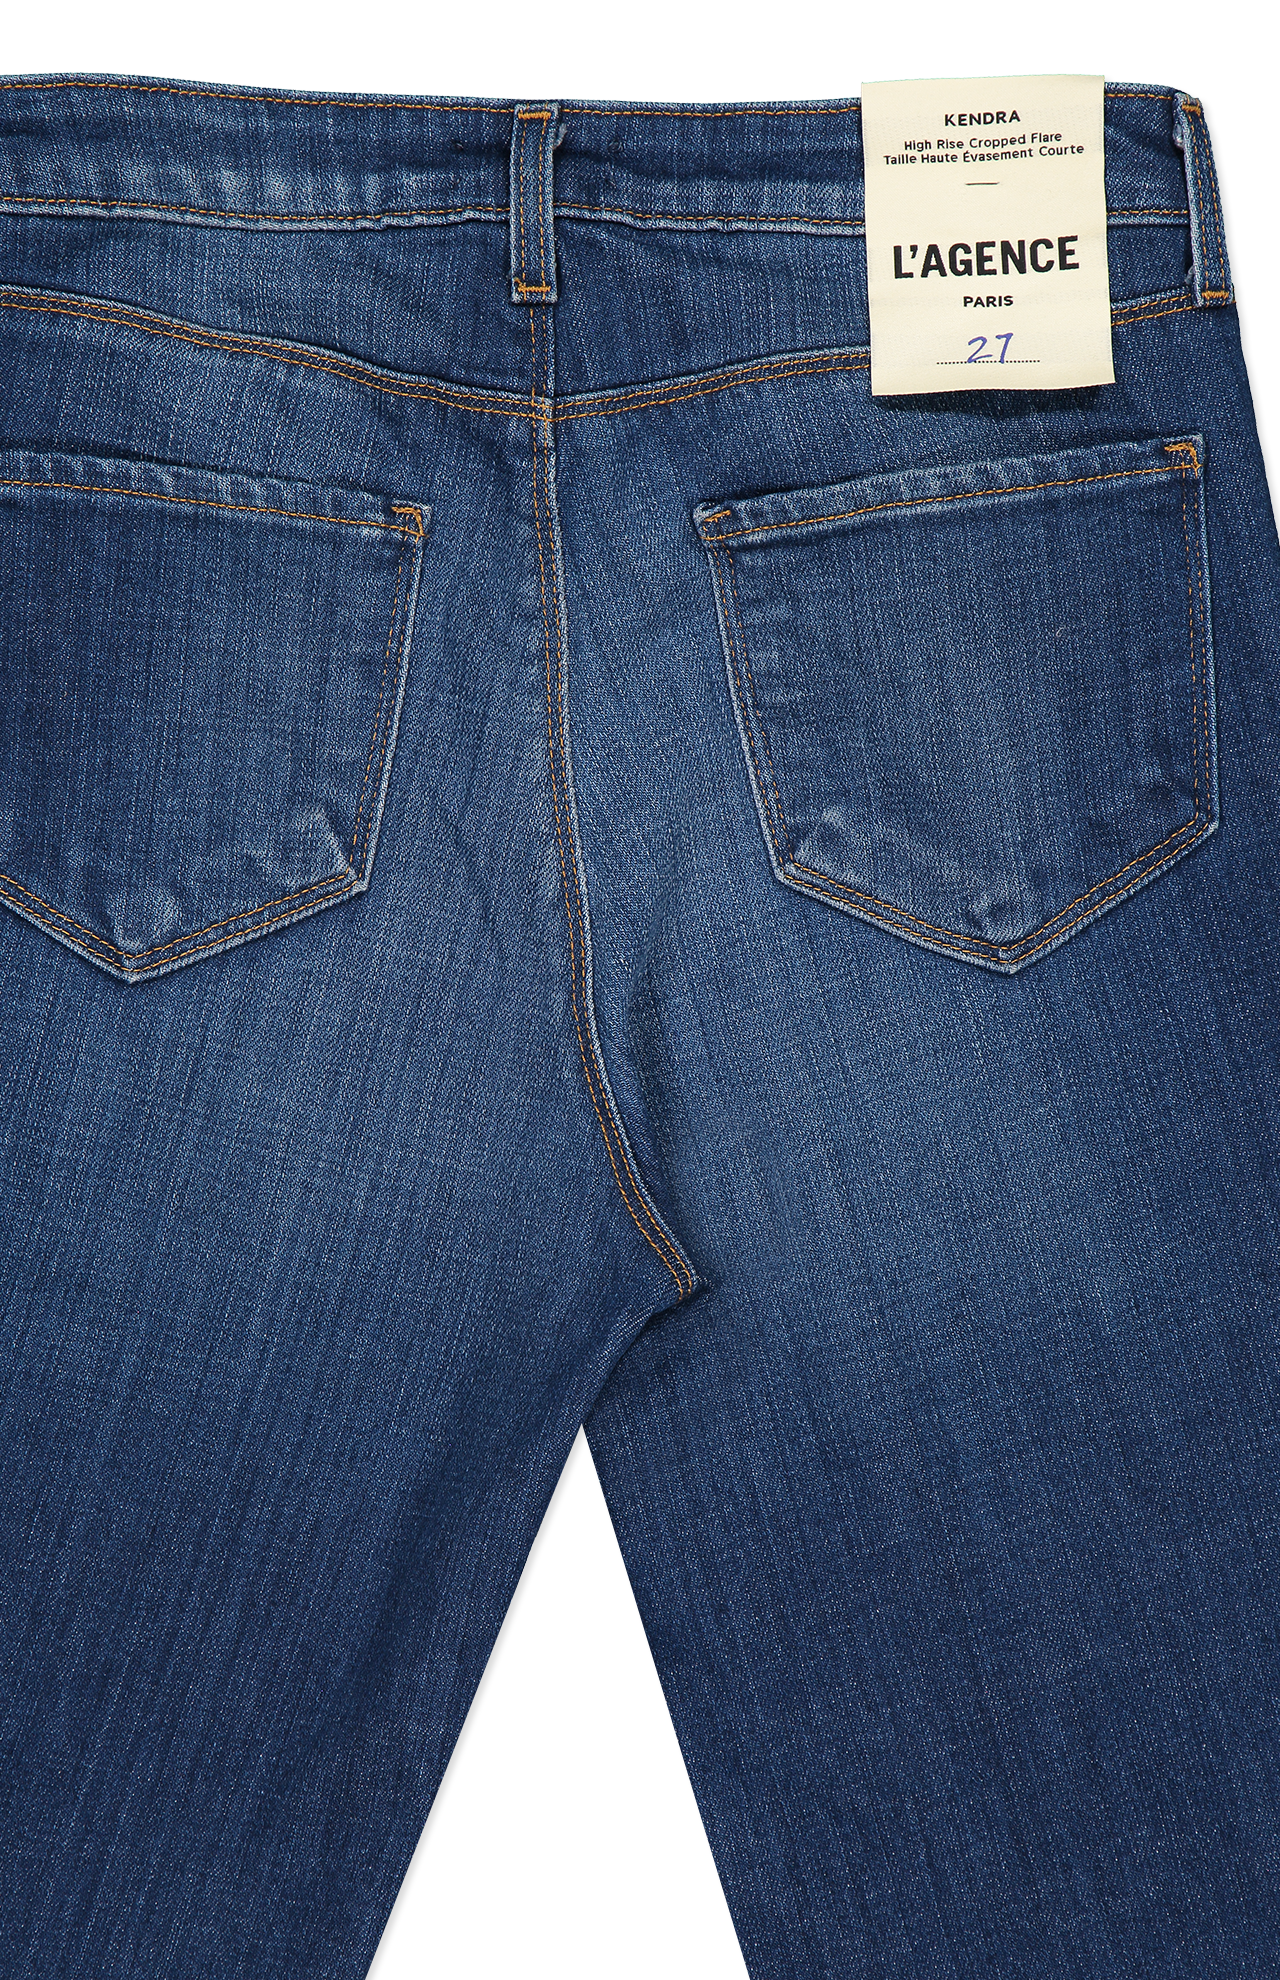 Lagence Kendra H/R Crop Flare Jeans Blue Back Pocket Detail Image (6941051191411)